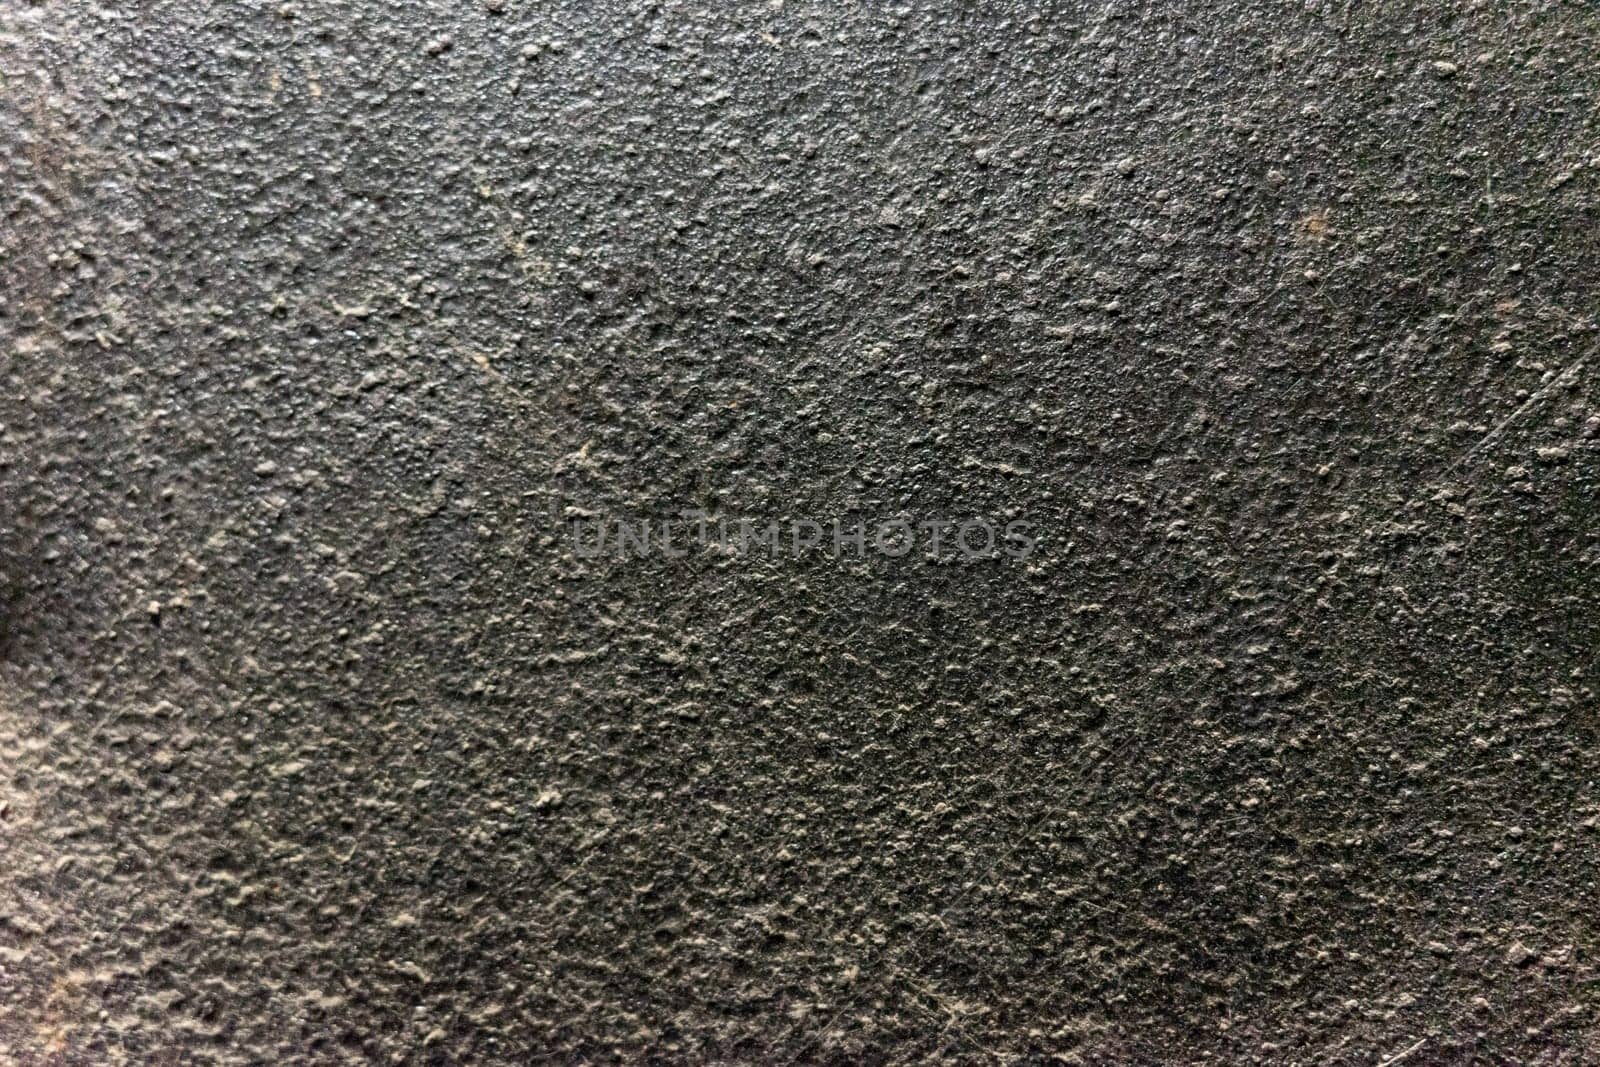 Rough concrete surface. Concrete surface texture.